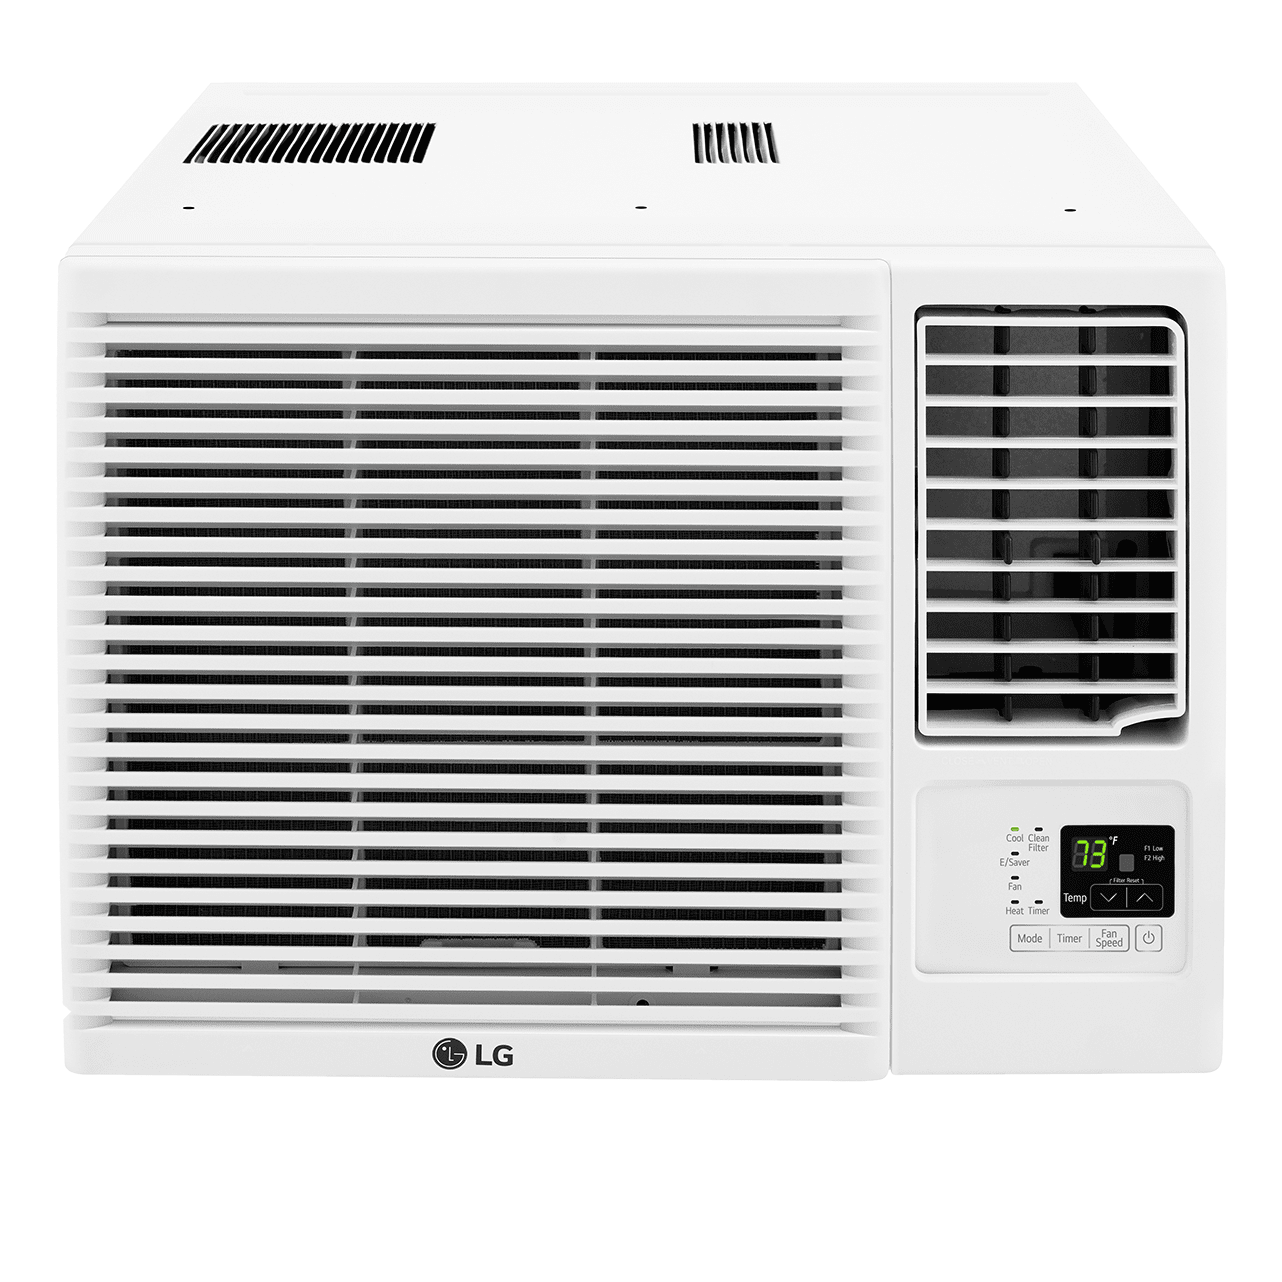 LG 7,600 BTU Window Air Conditioner with Heat